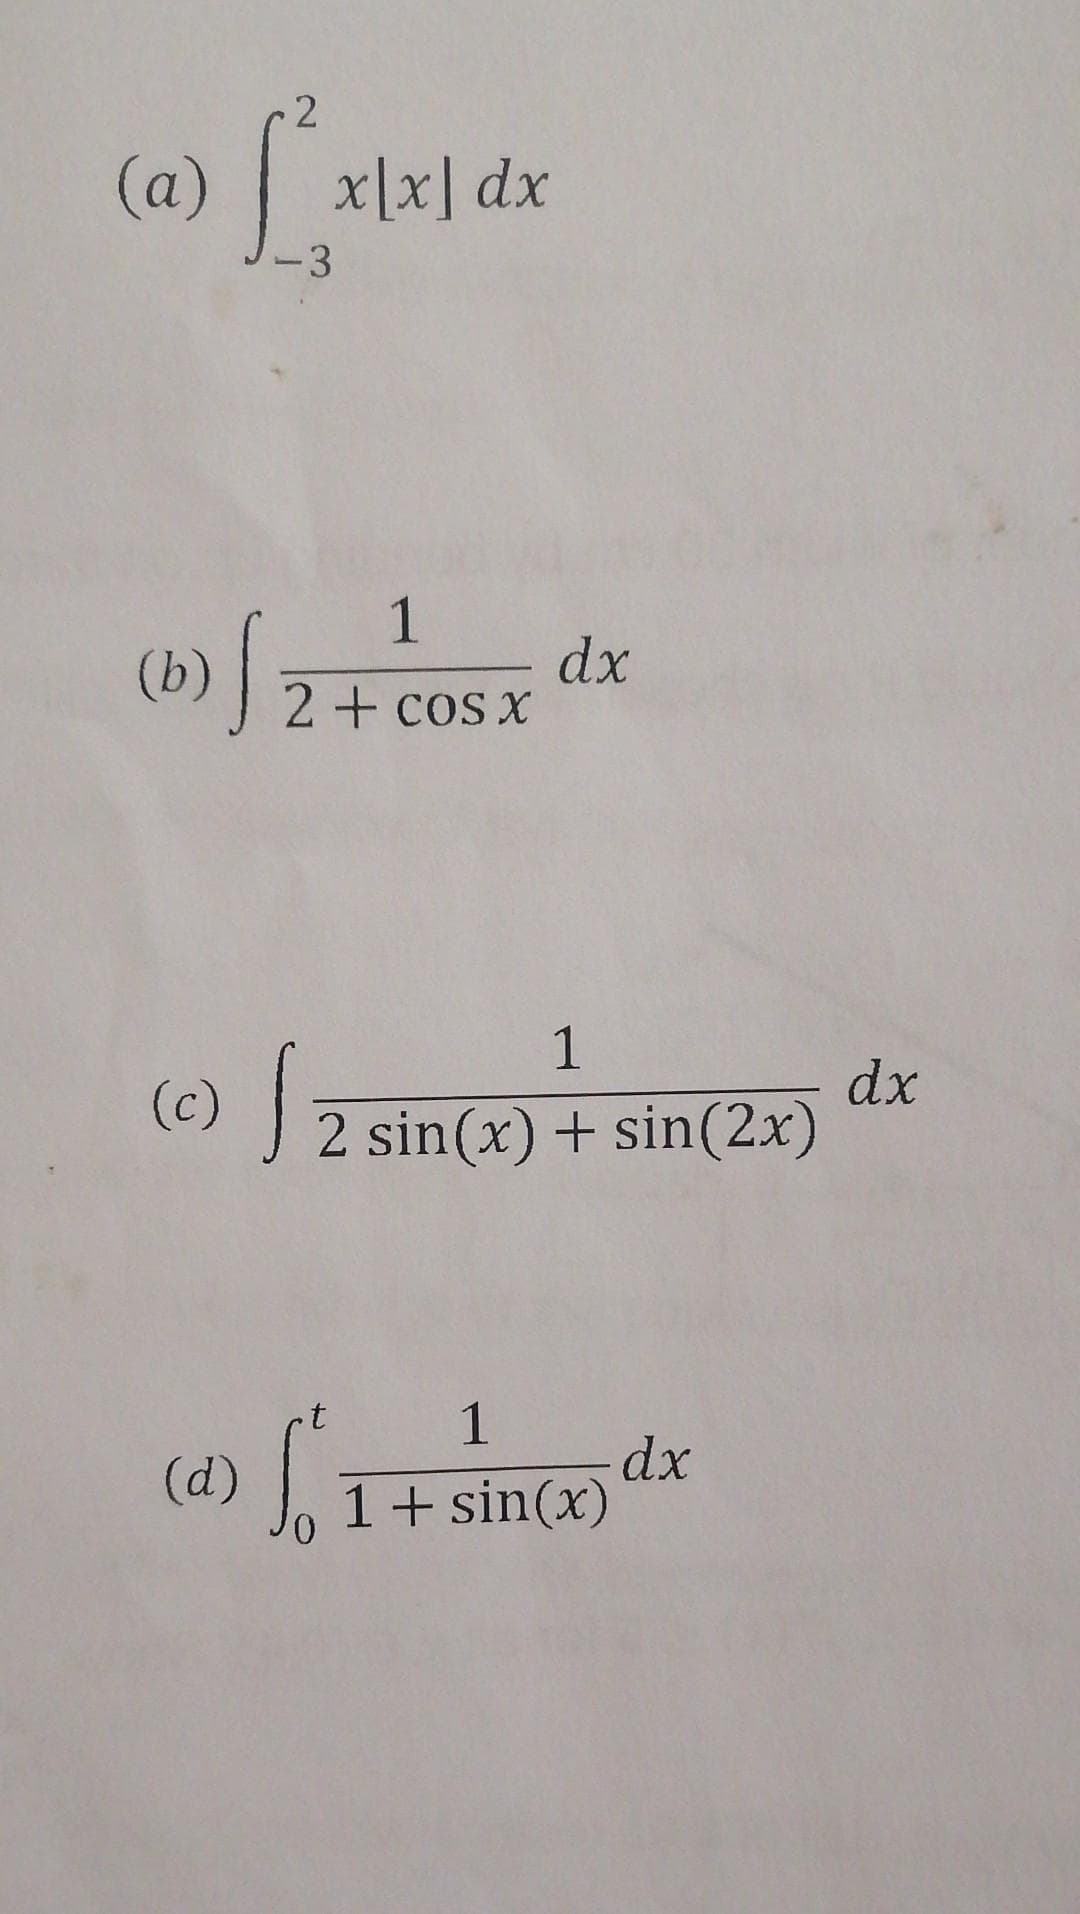 2
(a) [
x[x] dx
-3
1
2 + cos x
(b) √ z
dx
1
(c) √ 2 sin(x) + sin(2x)
1
(a) f². dx
1 + sin(x)
dx